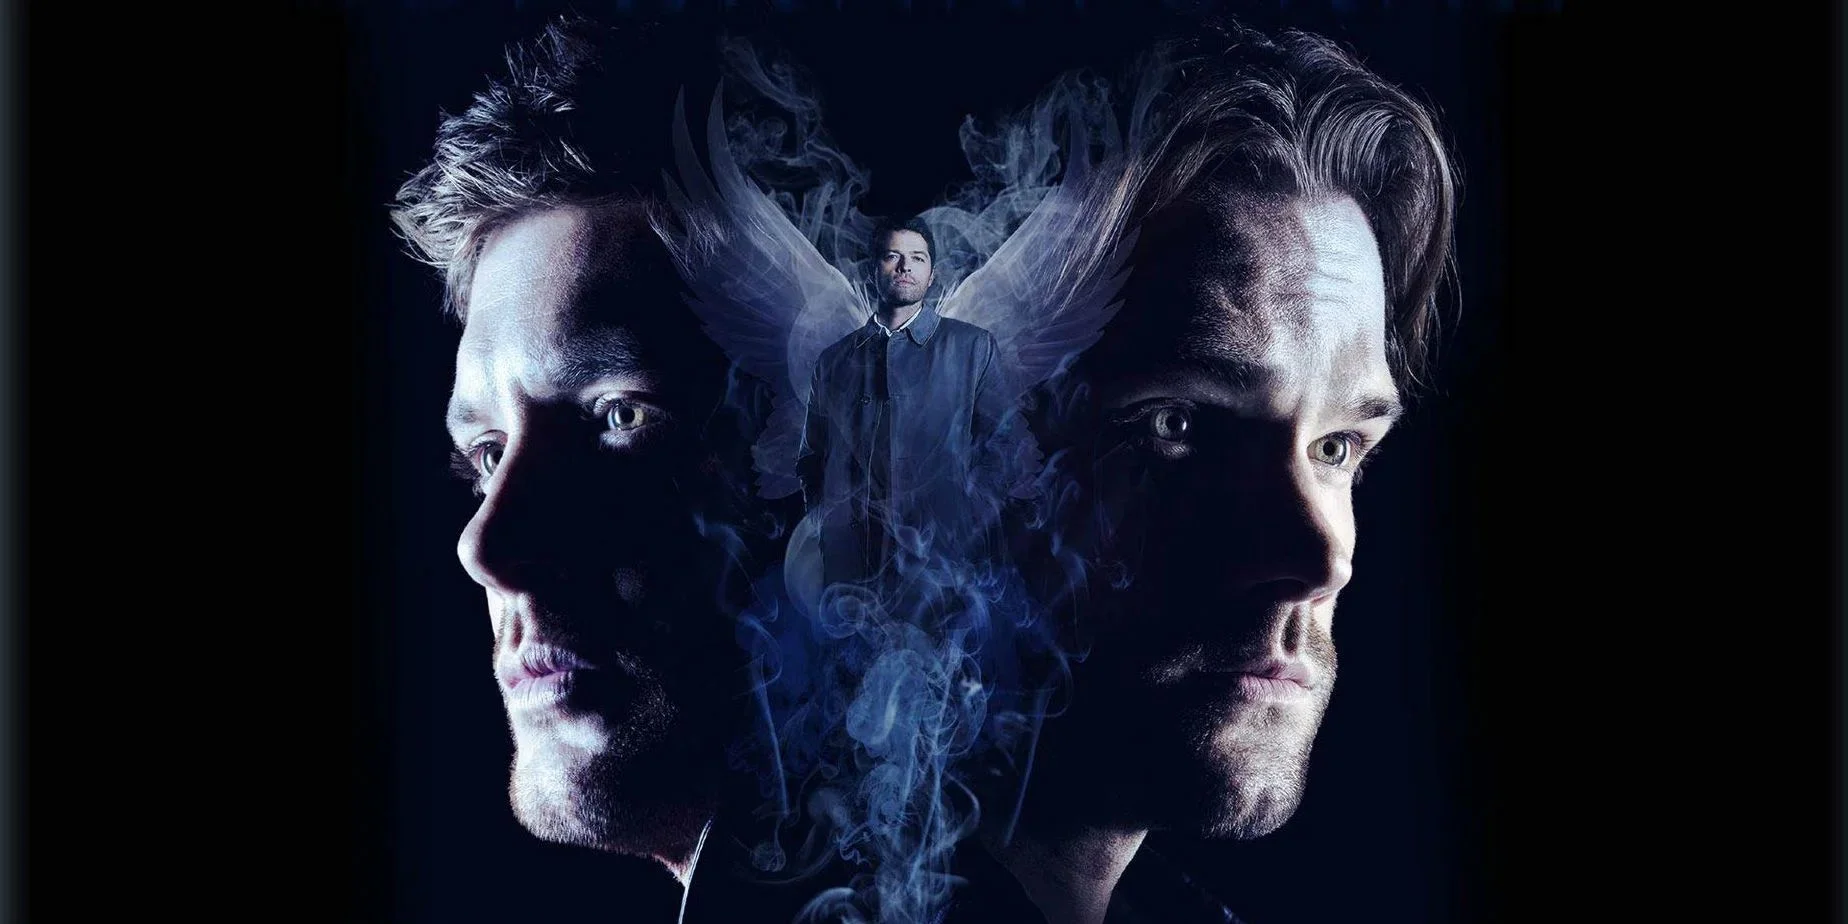 10 октября стартует заключительный сезон сериала «Сверхъестественное» (Supernatural). Фанаты семьи Винчестеров ждут концовку и размышляют на тему того, что будет в последнем сезоне, и как он закончится.